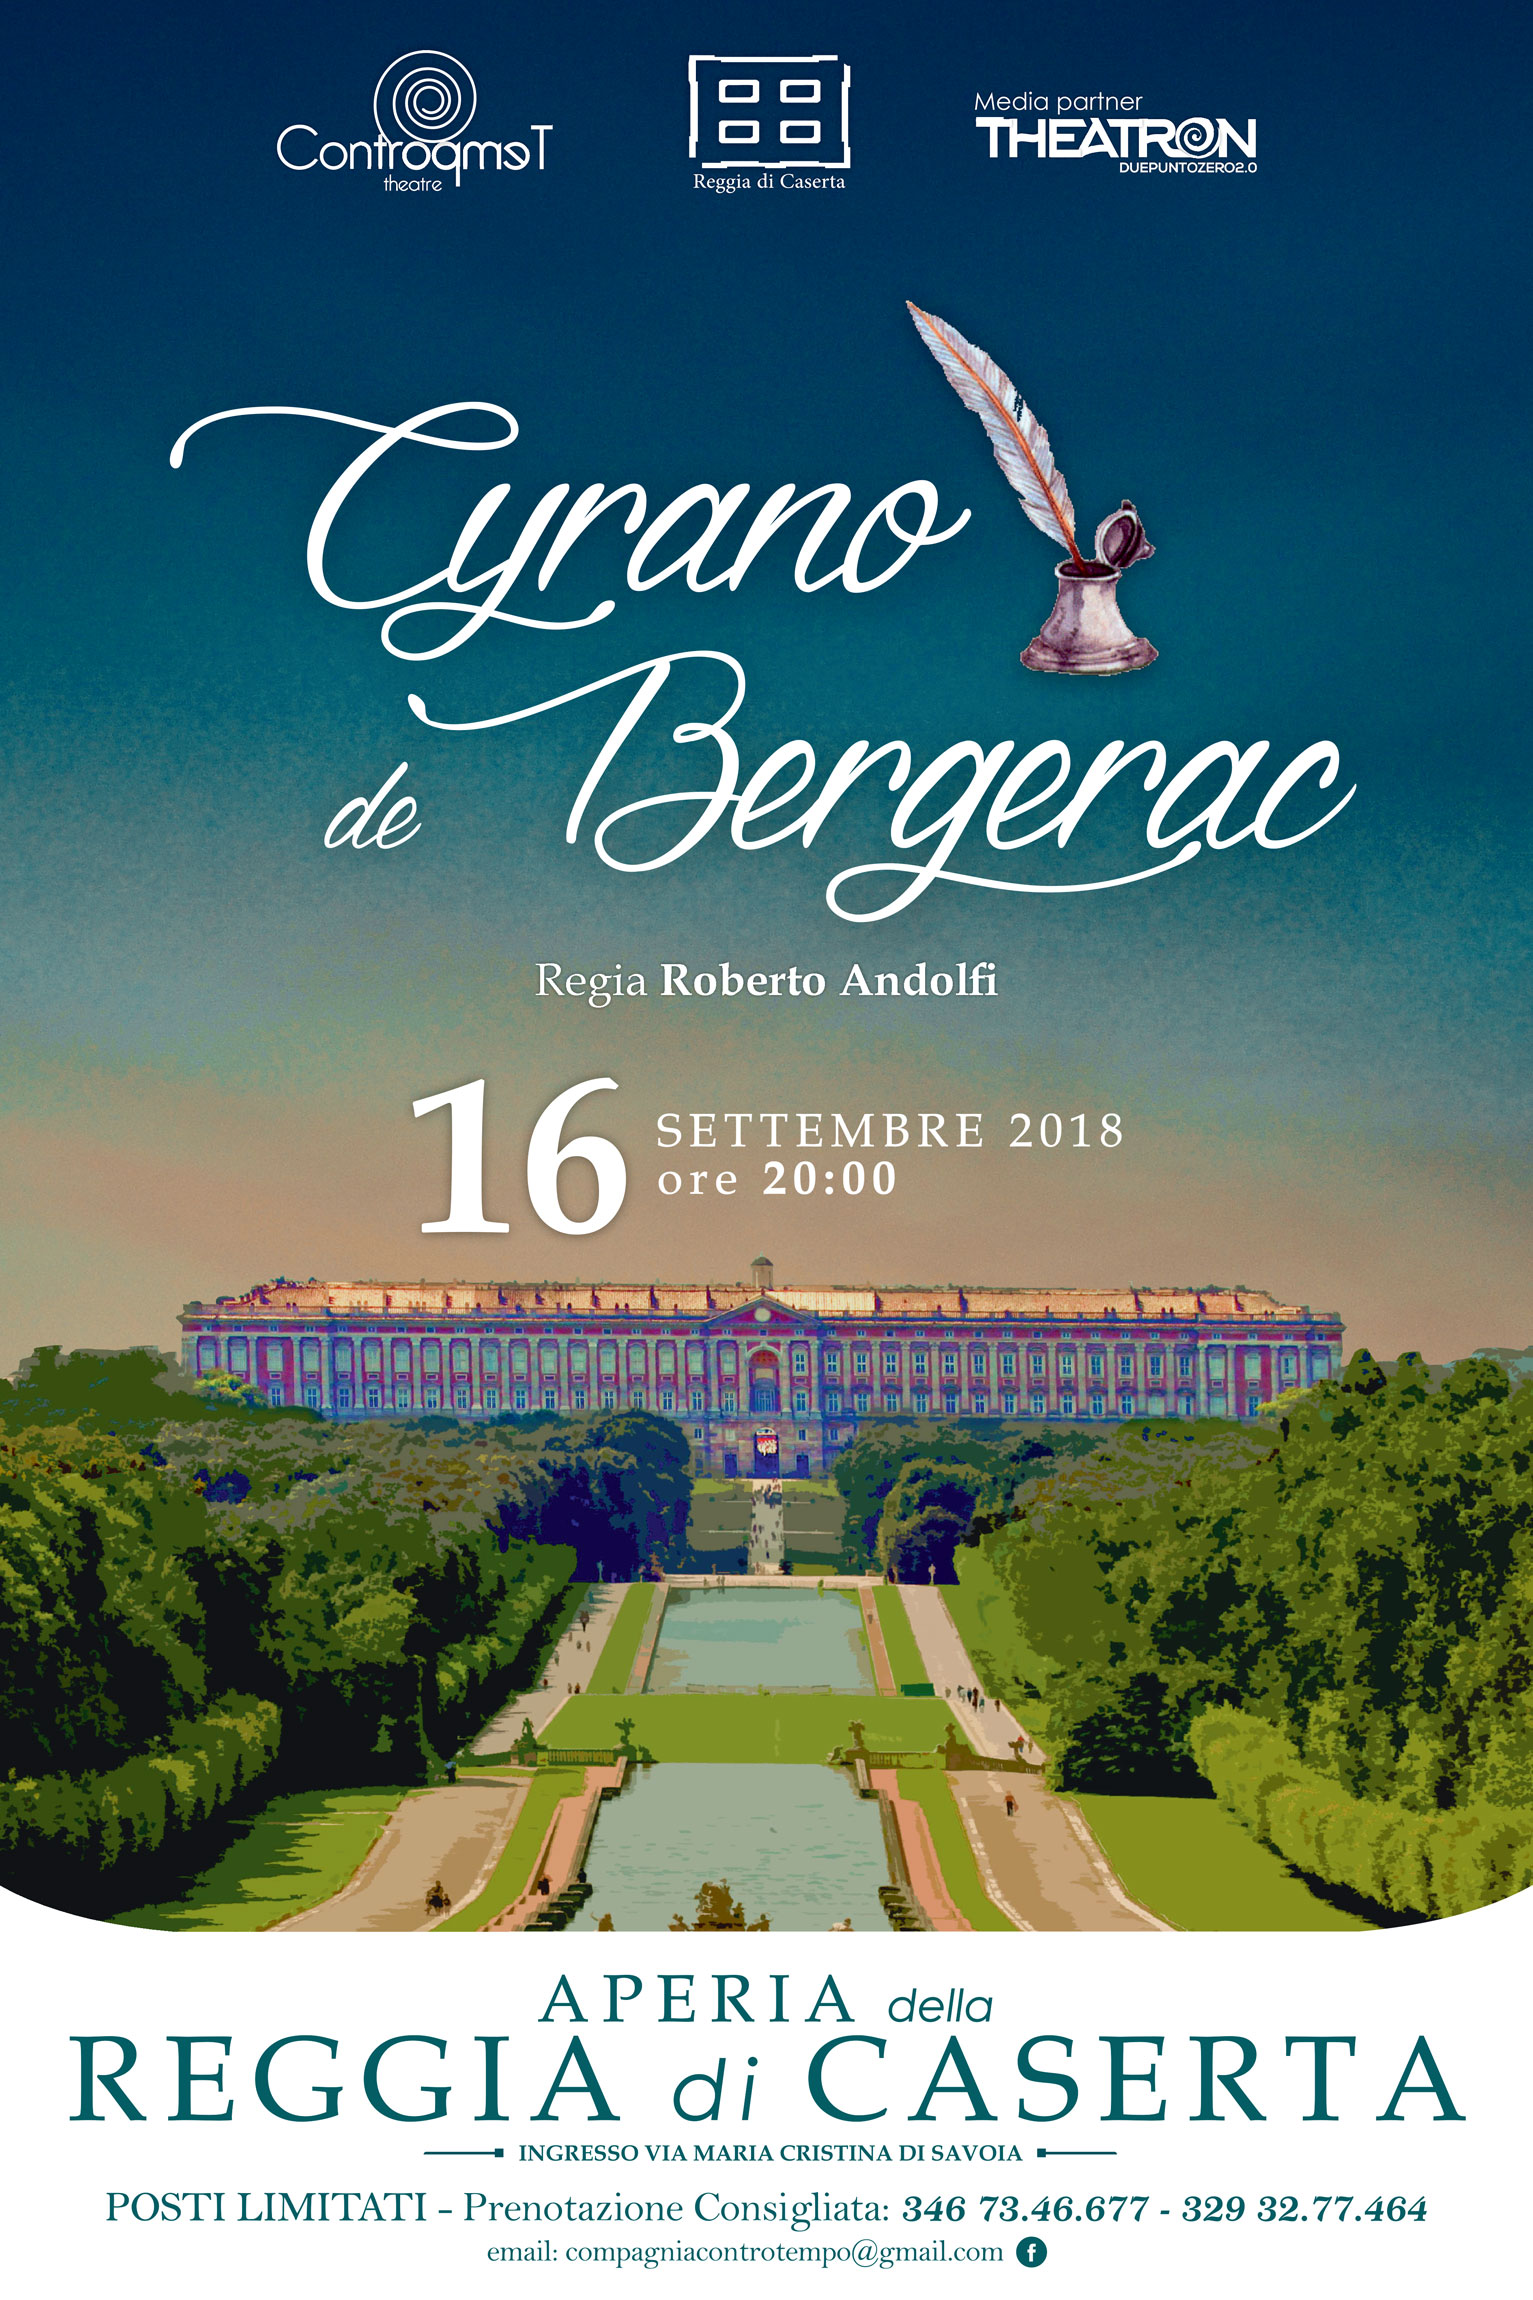  Cyrano de Bergerac di Controtempo Theatre all’Aperia della Reggia di Caserta